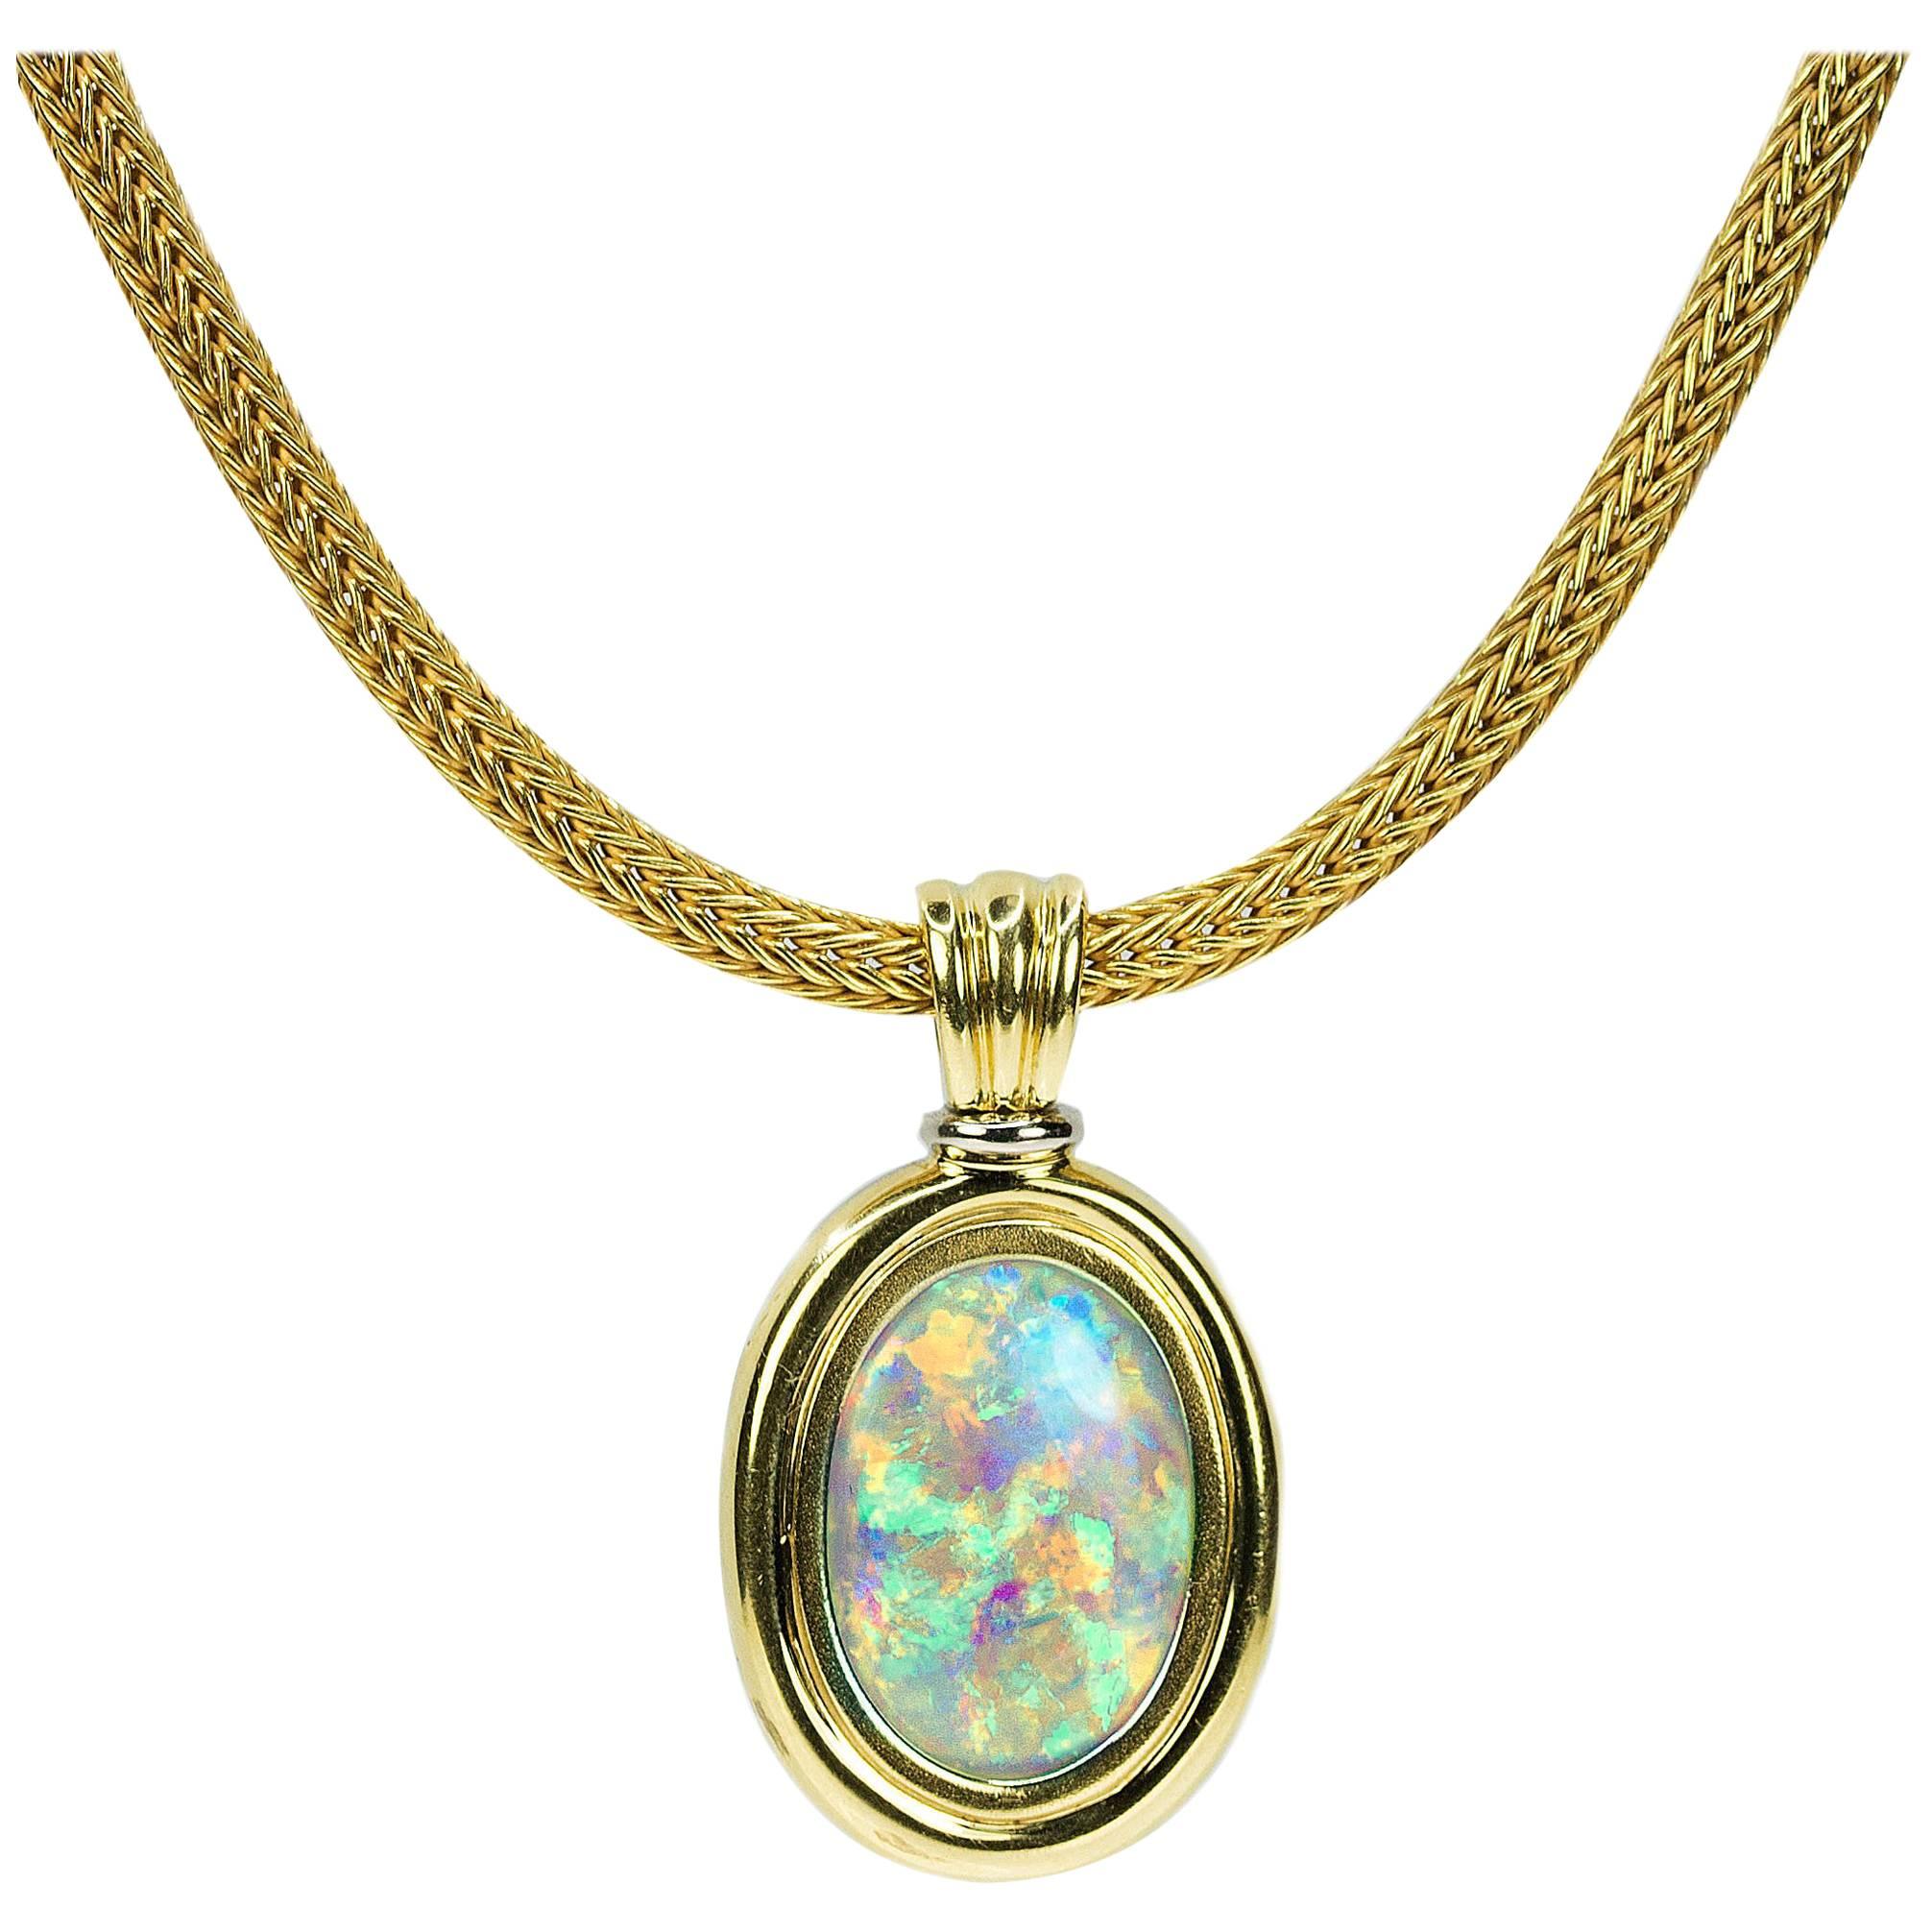 Magnificent Australian Opal Necklace